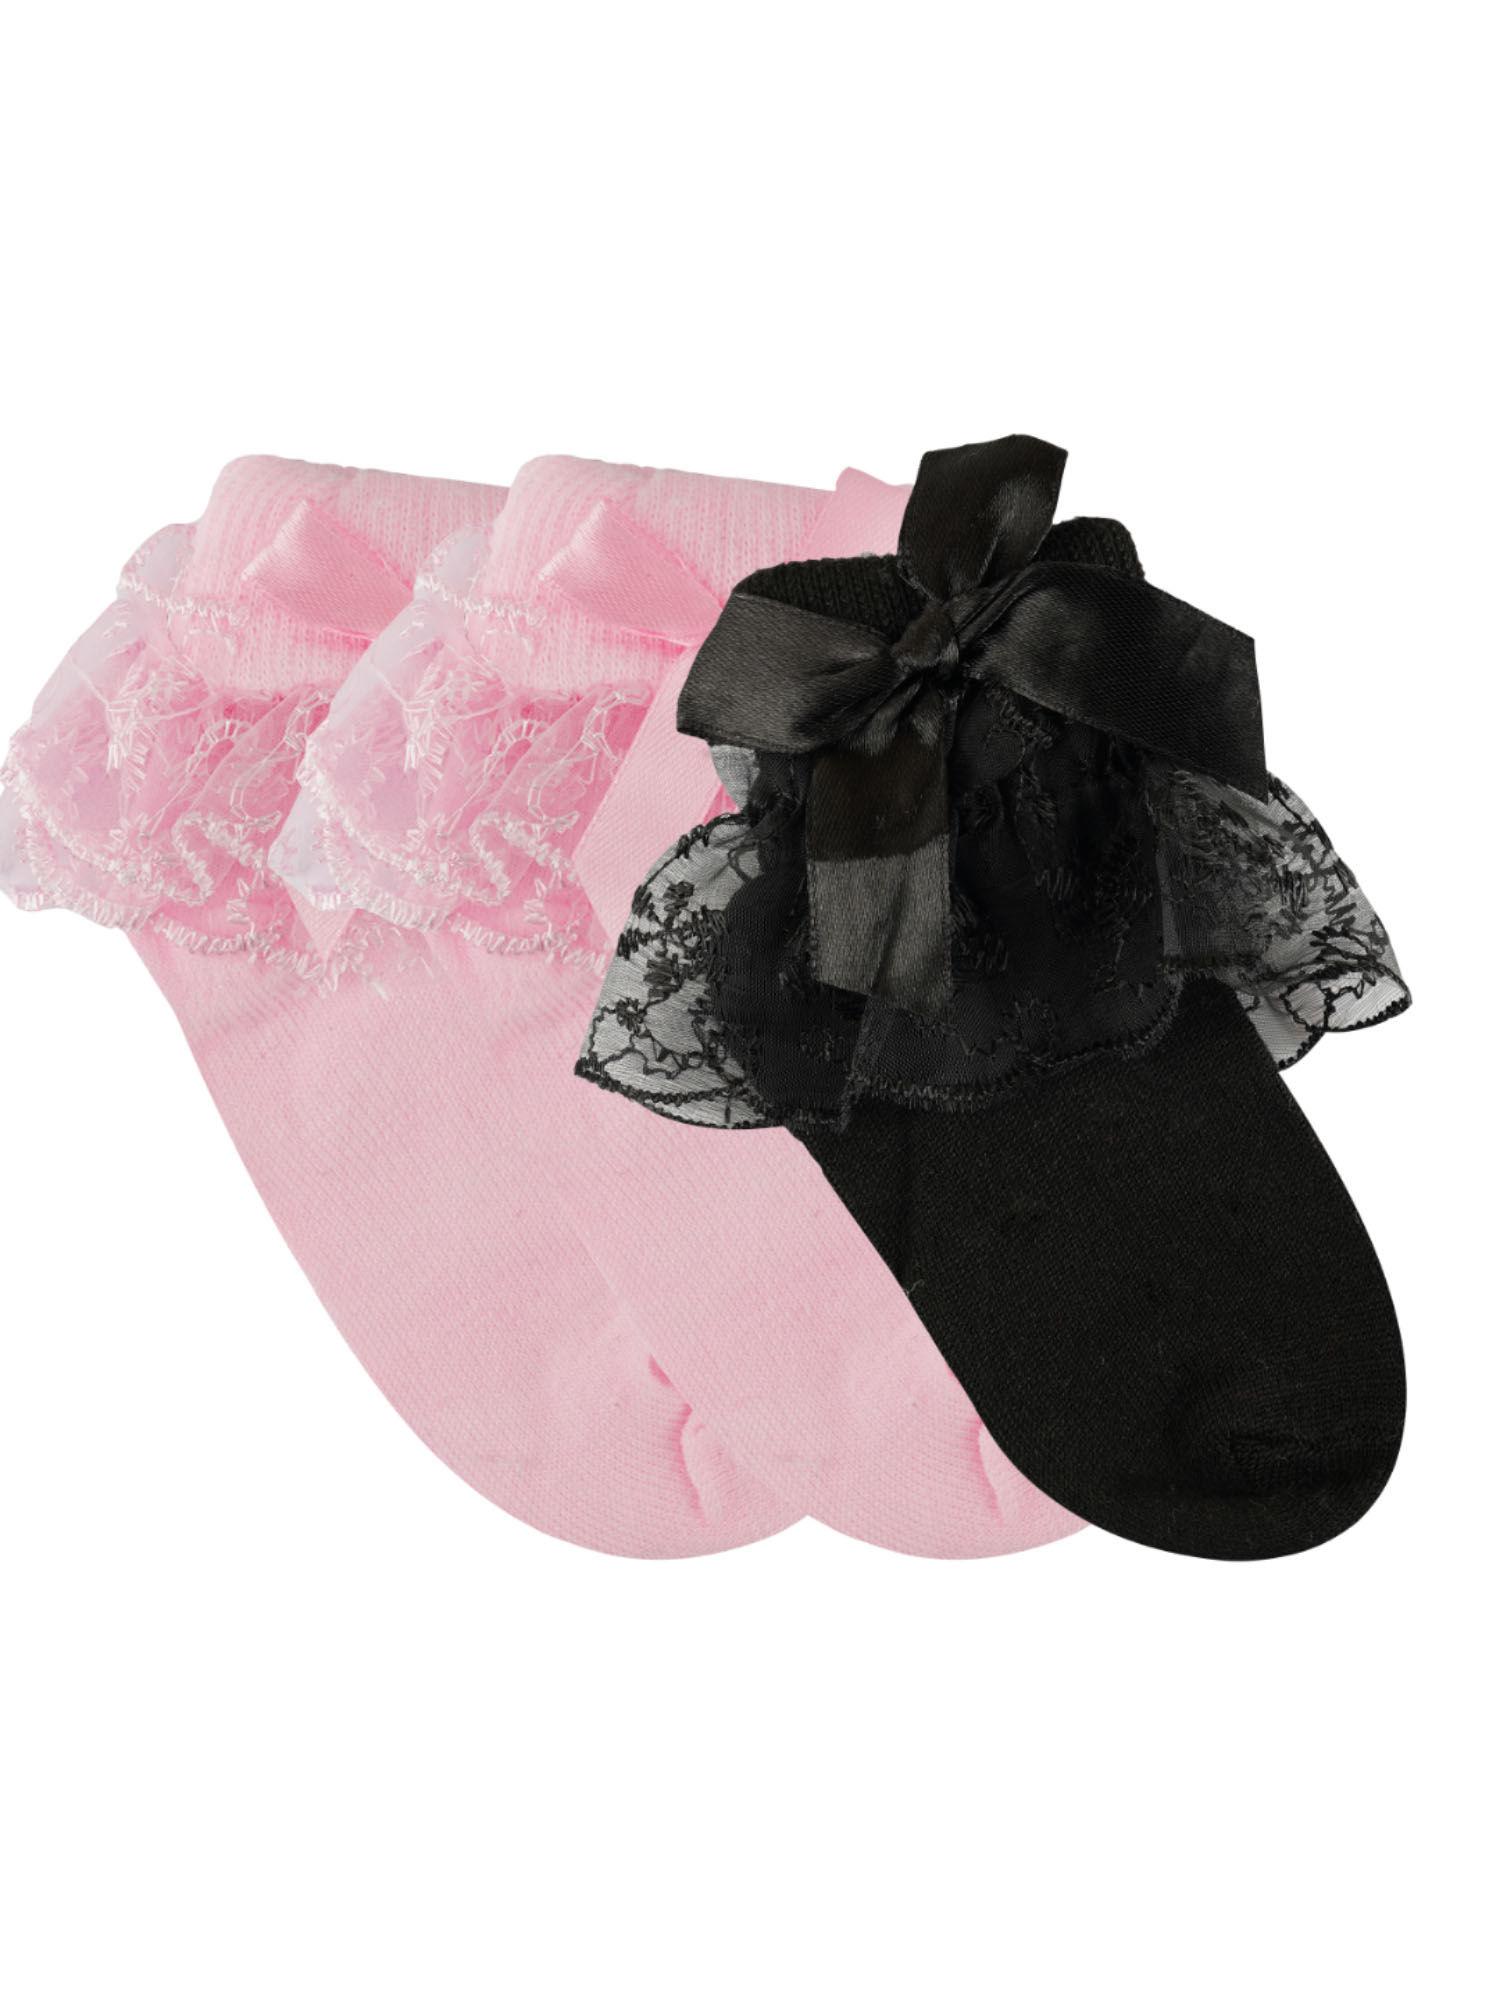 Girls Pink-black Floral Socks (Pack of 3)